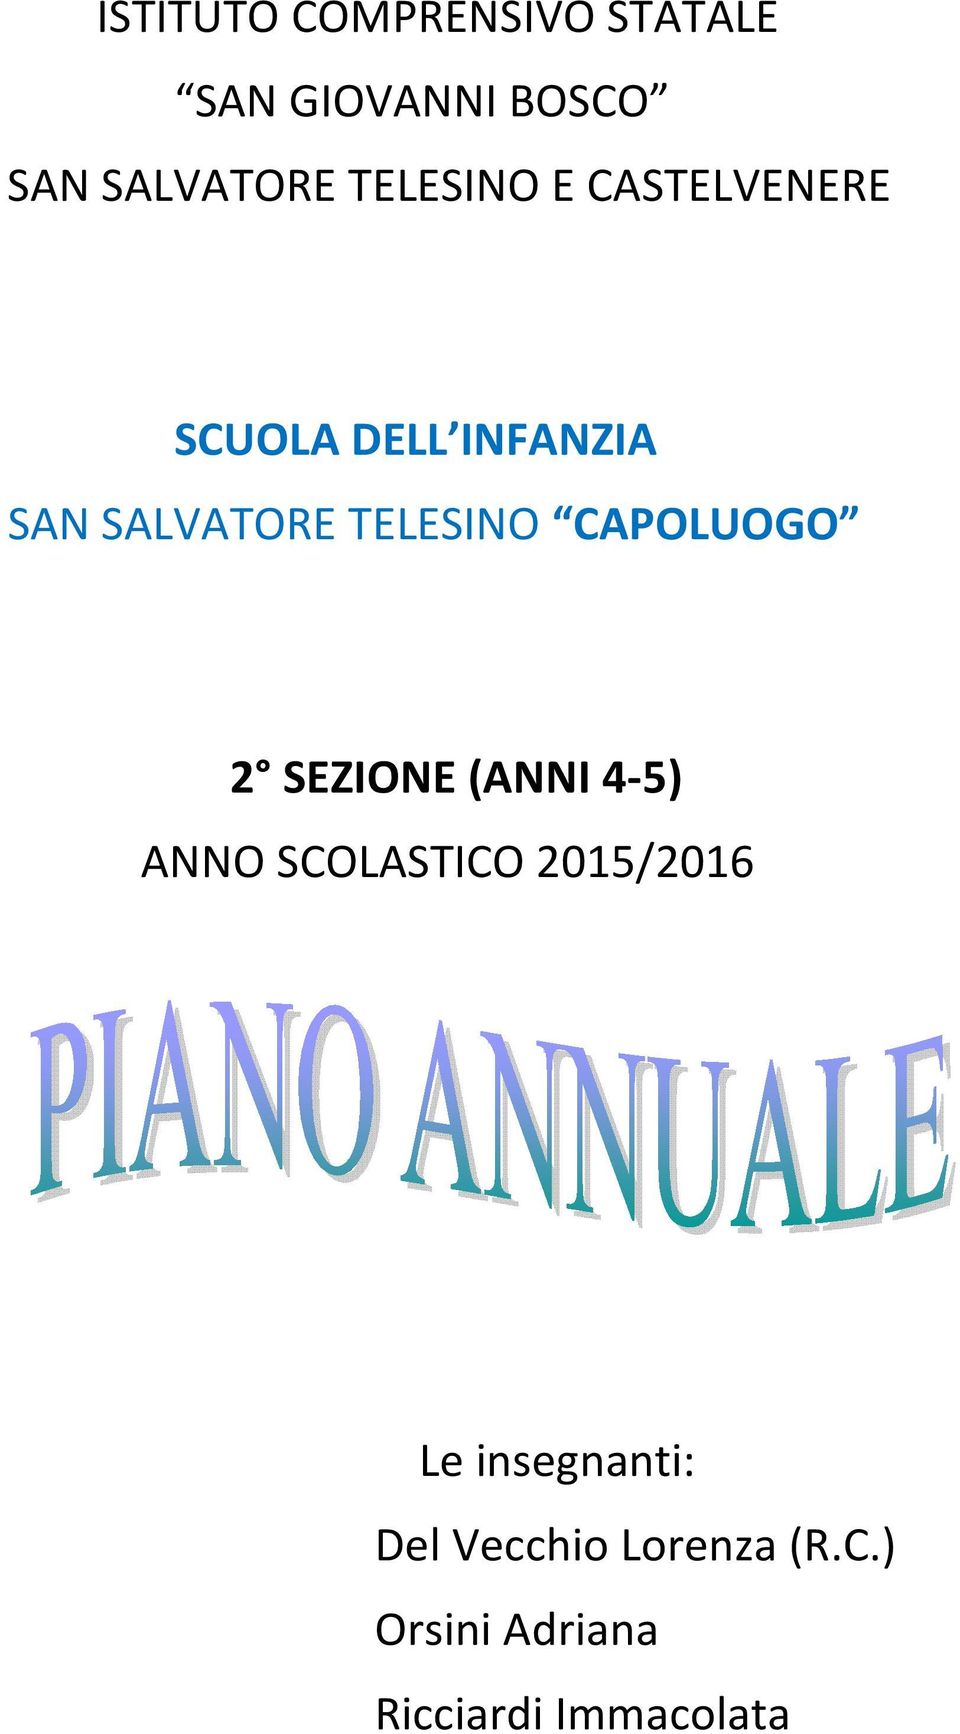 TELESINO CAPOLUOGO 2 SEZIONE (ANNI 4-5) ANNO SCOLASTICO 2015/2016